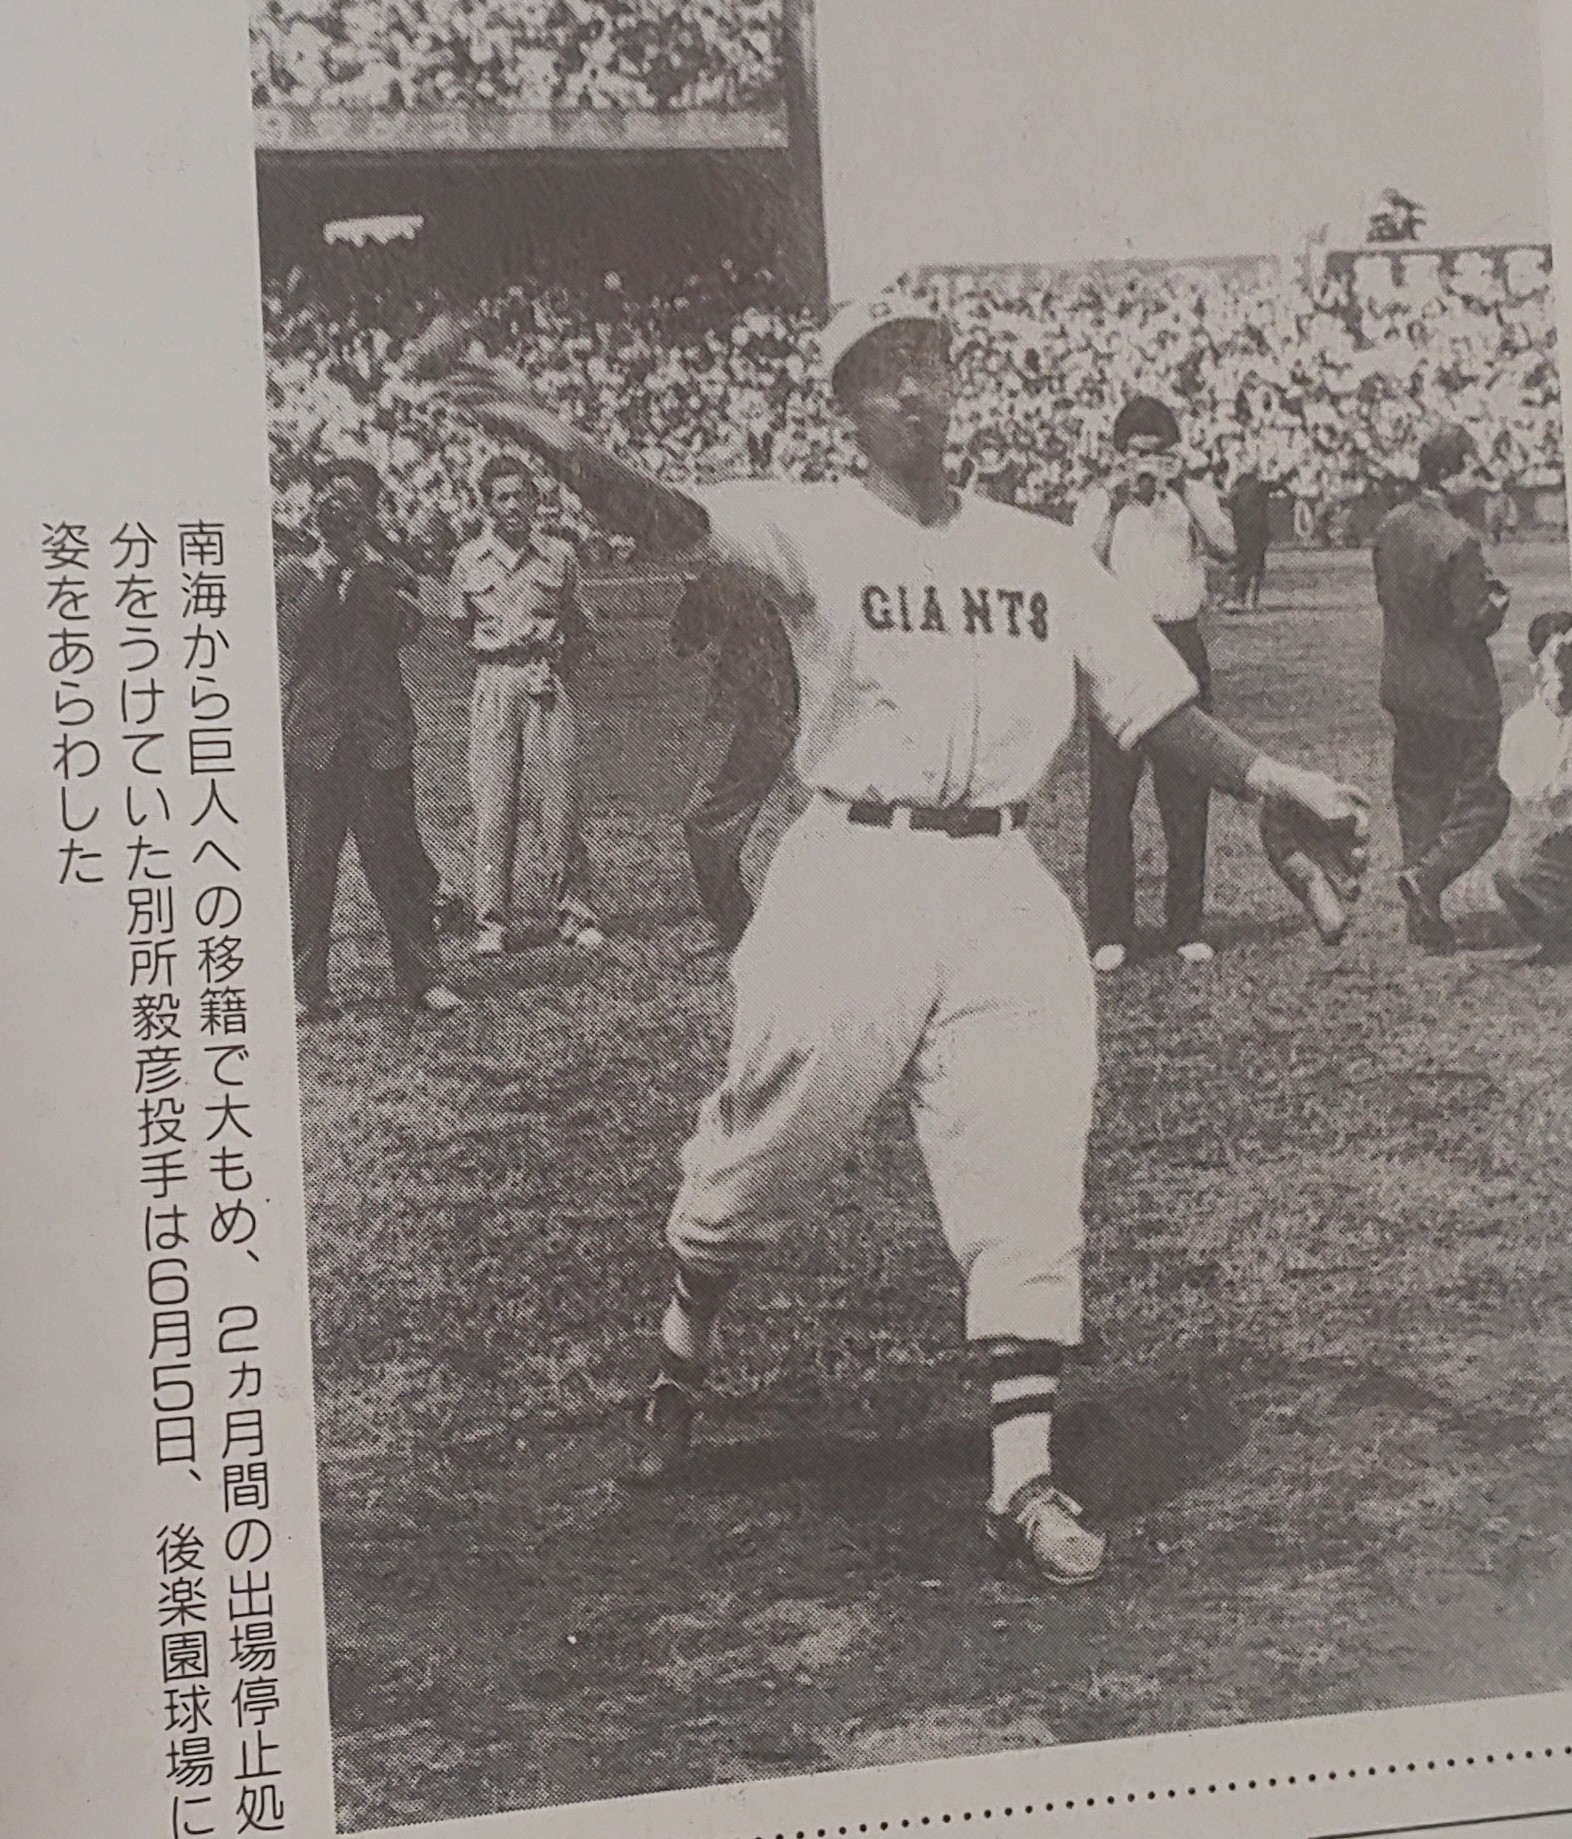 日本野球史 の記事一覧 あま野球日記 大学野球 楽天ブログ